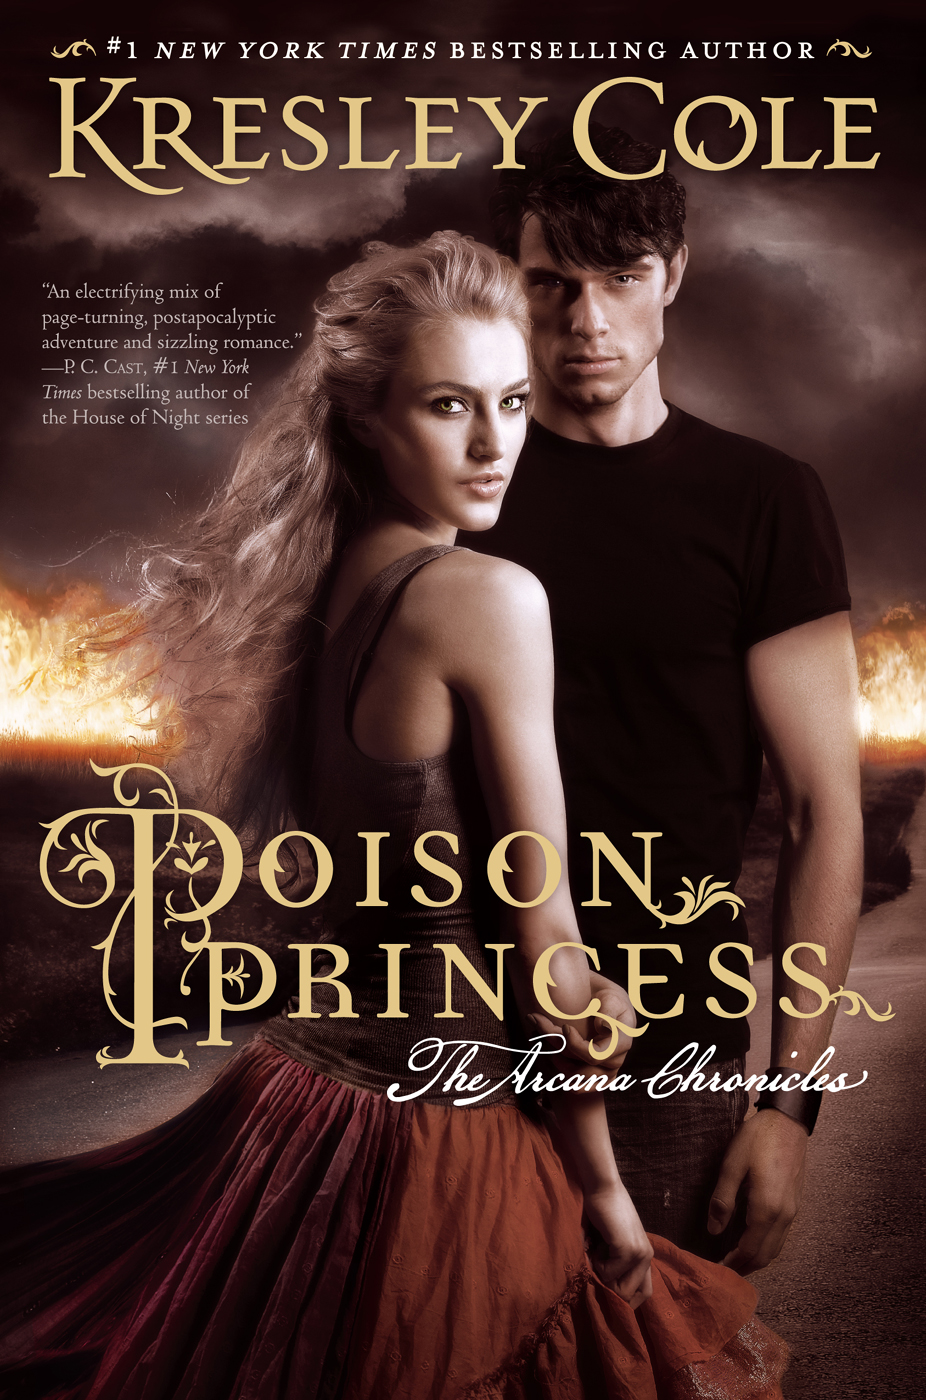 Poison Princess by Kresley Cole